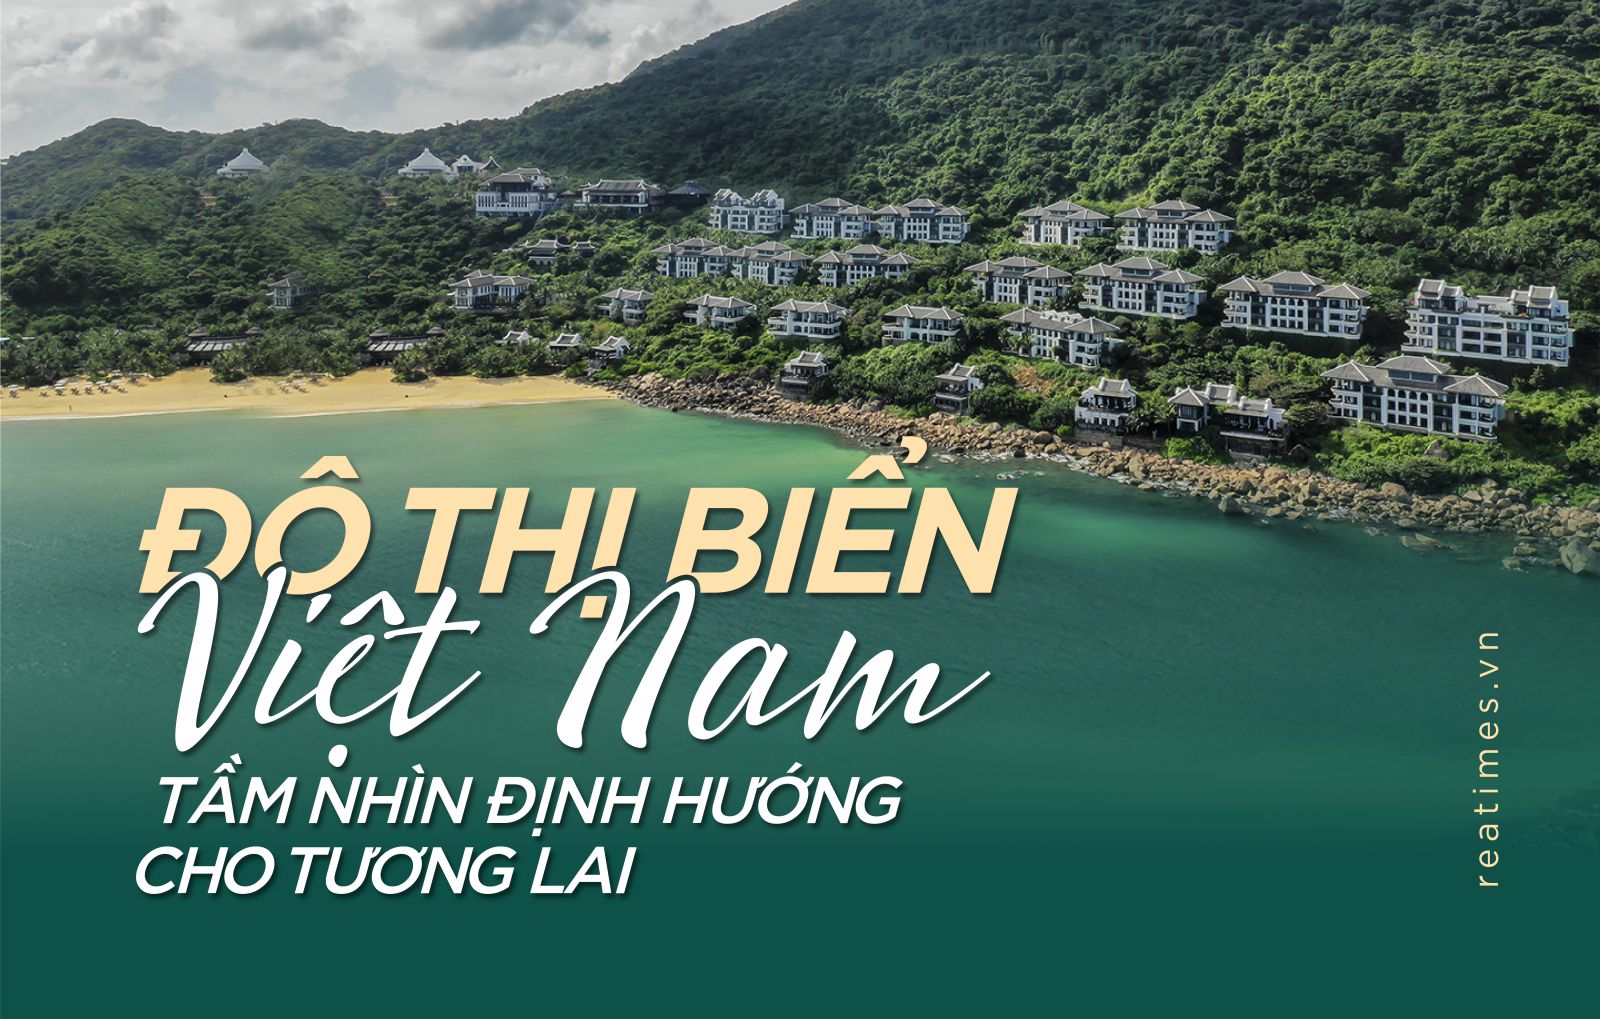 Đô thị biển Việt Nam - tầm nhìn định hướng cho tương lai